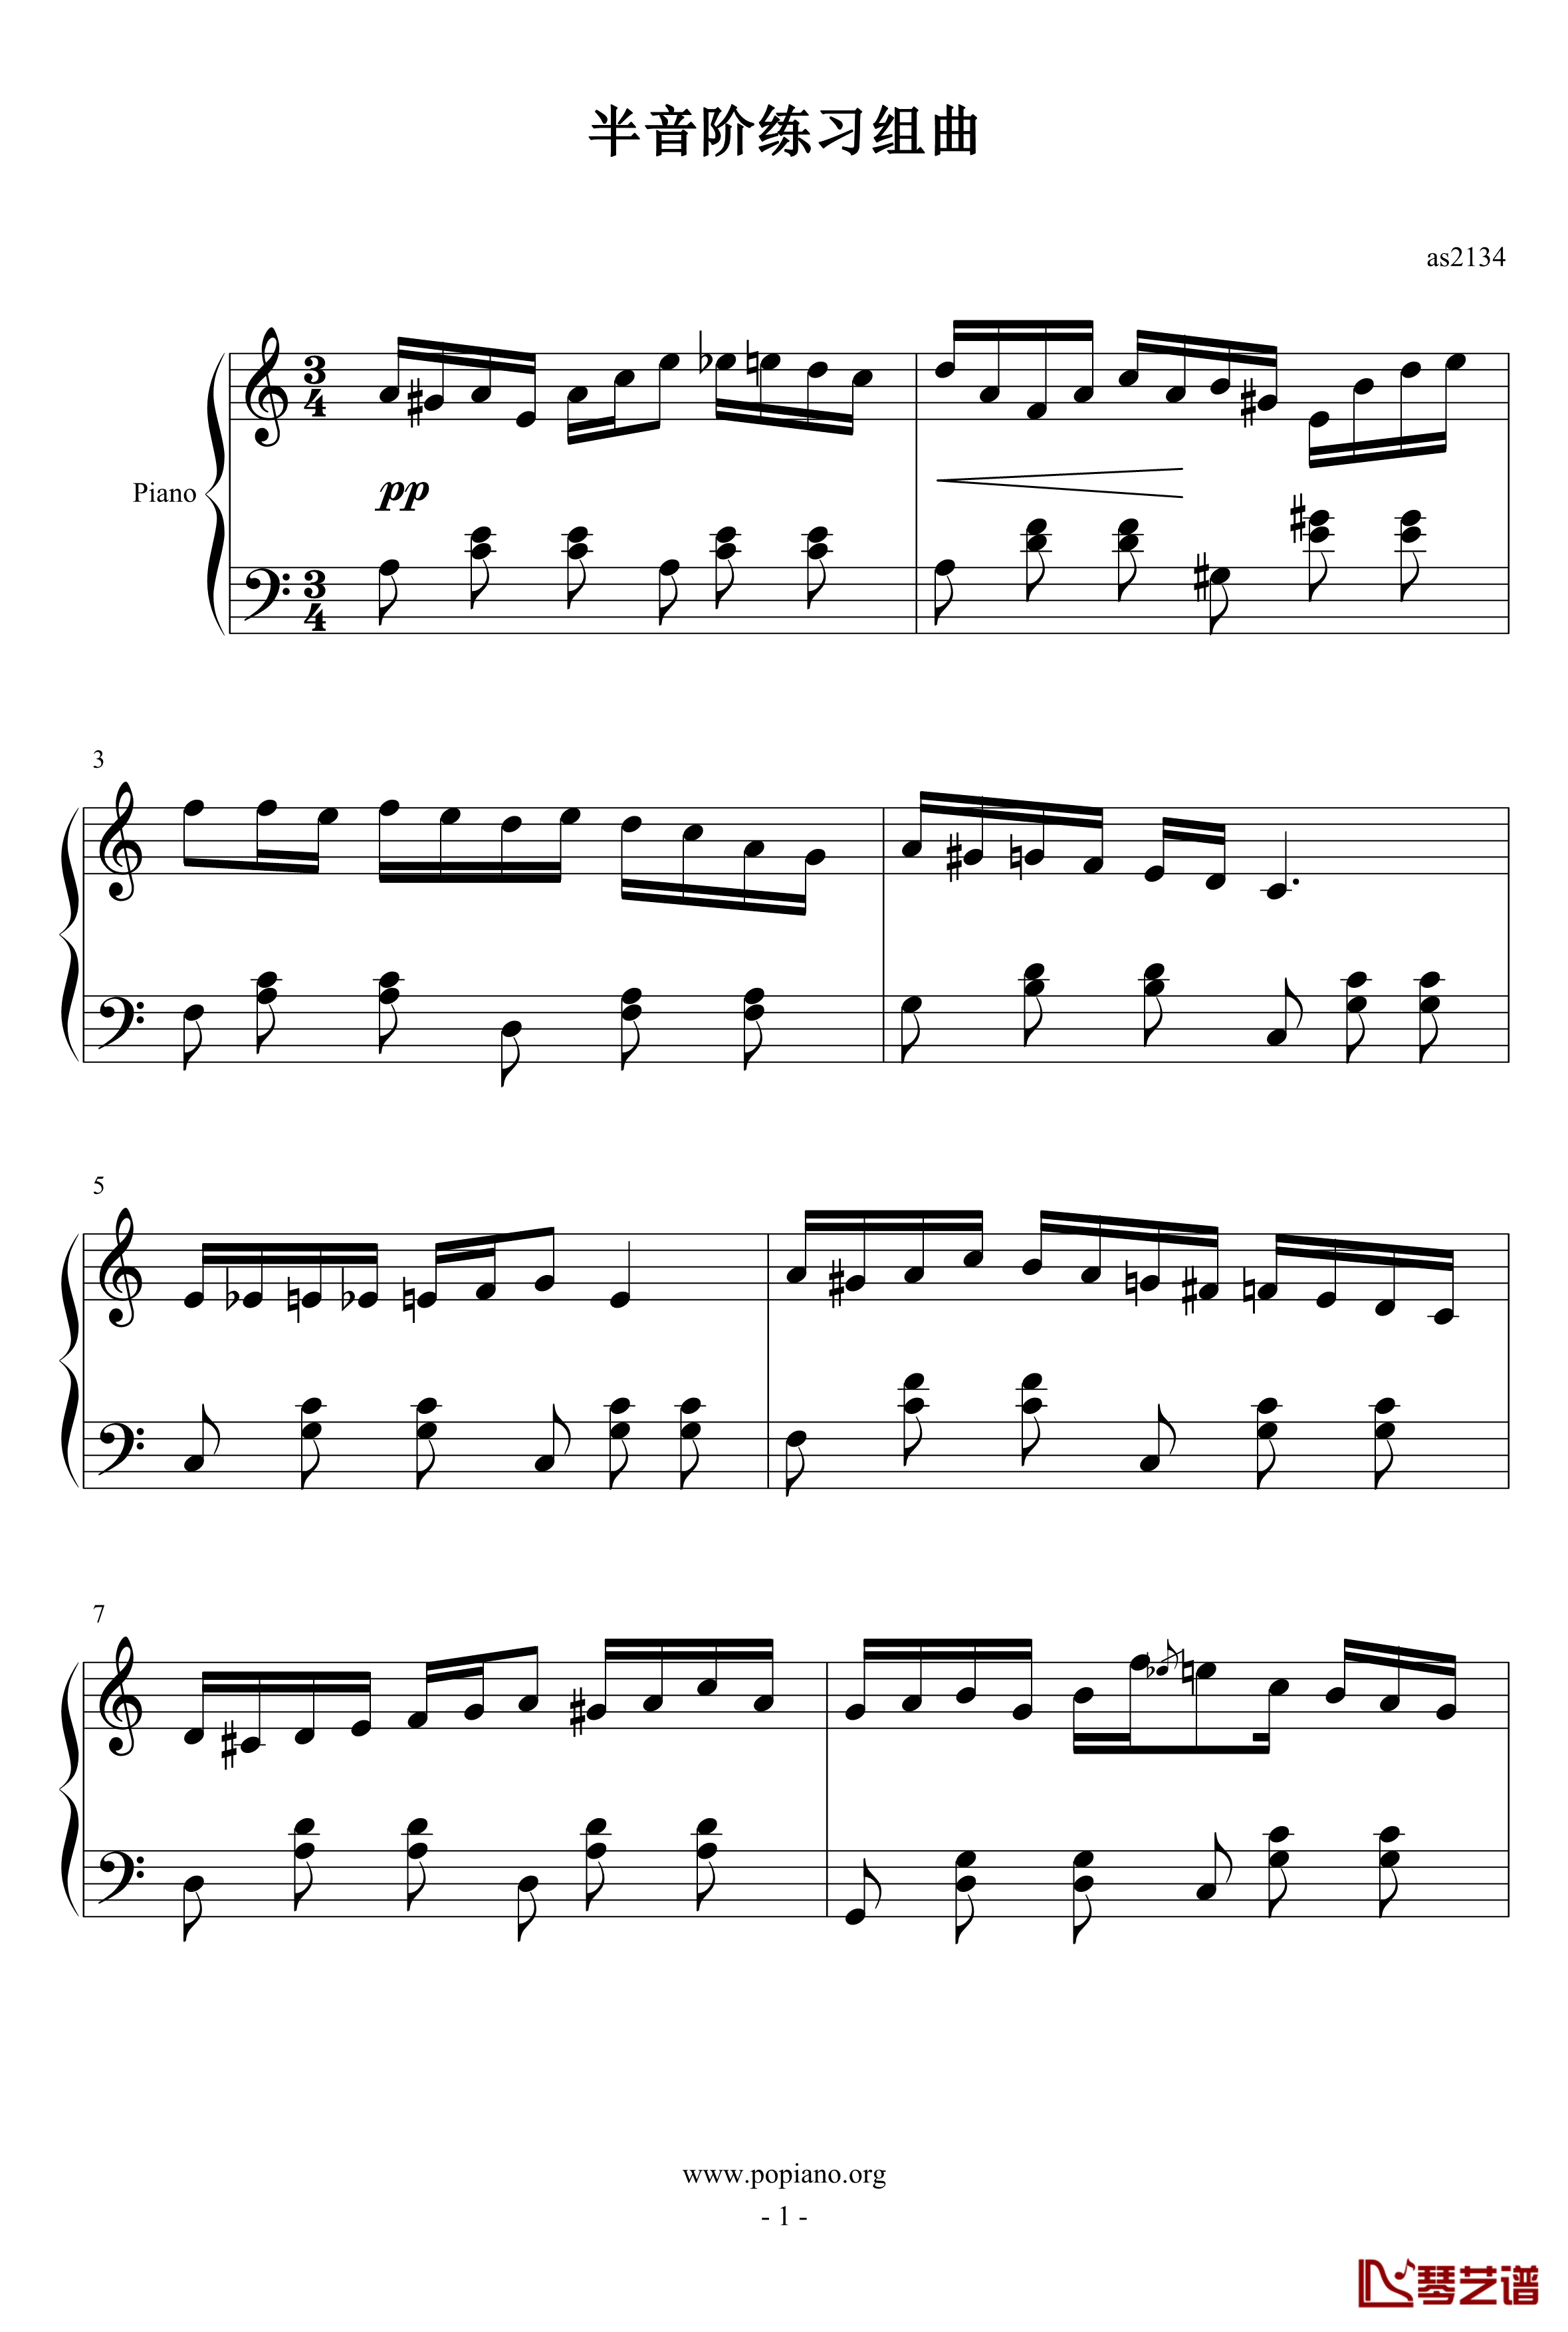 半音阶练习组曲钢琴谱-as21341